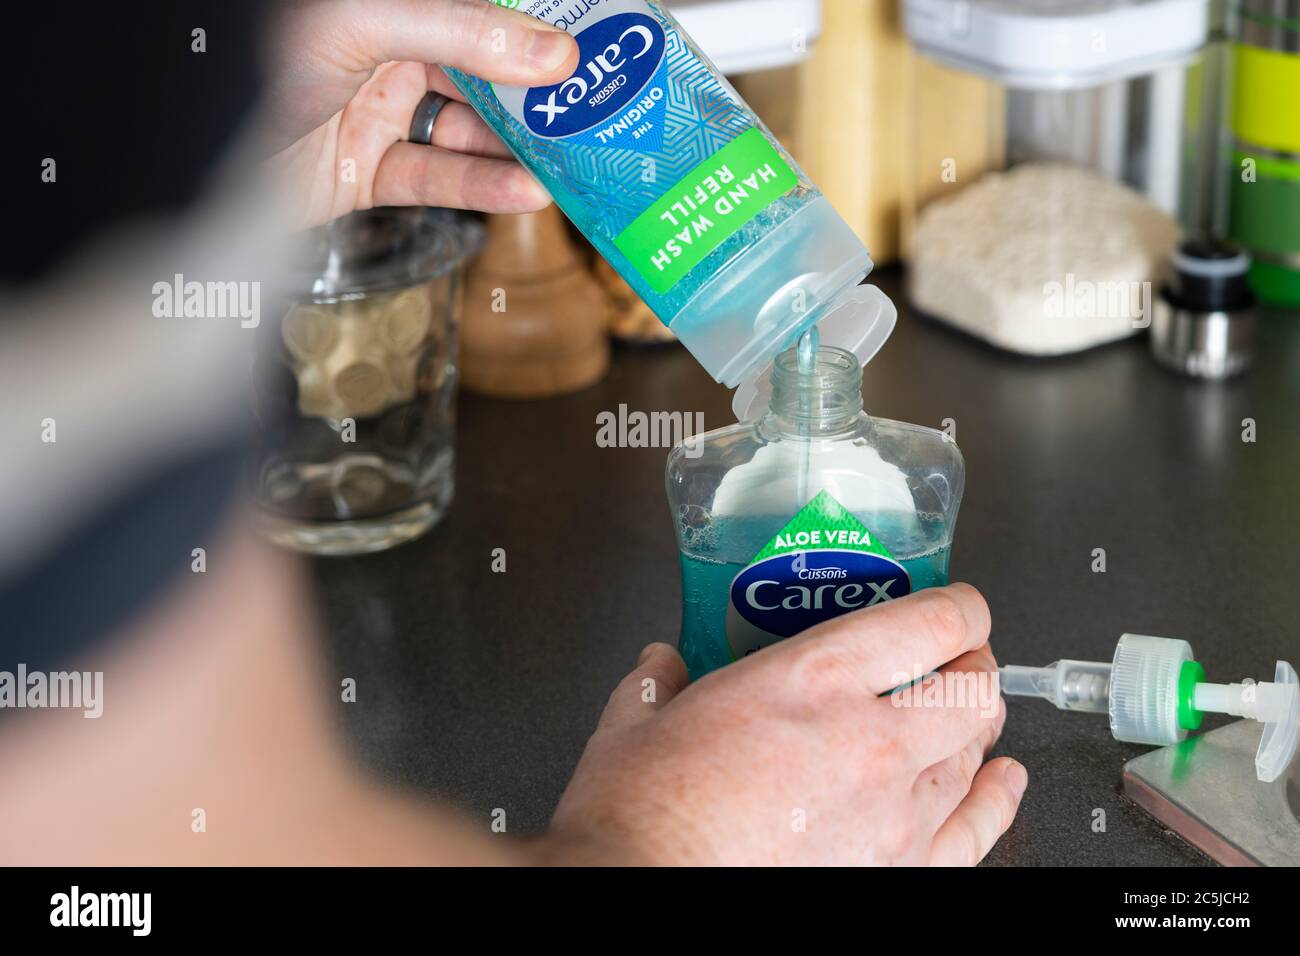 Un uomo che tiene un contenitore della pompa igienizzante per lavaggio a mano con sapone liquido antibatterico Carex (Cussons) e lo riempie con una bottiglia di riempimento Foto Stock